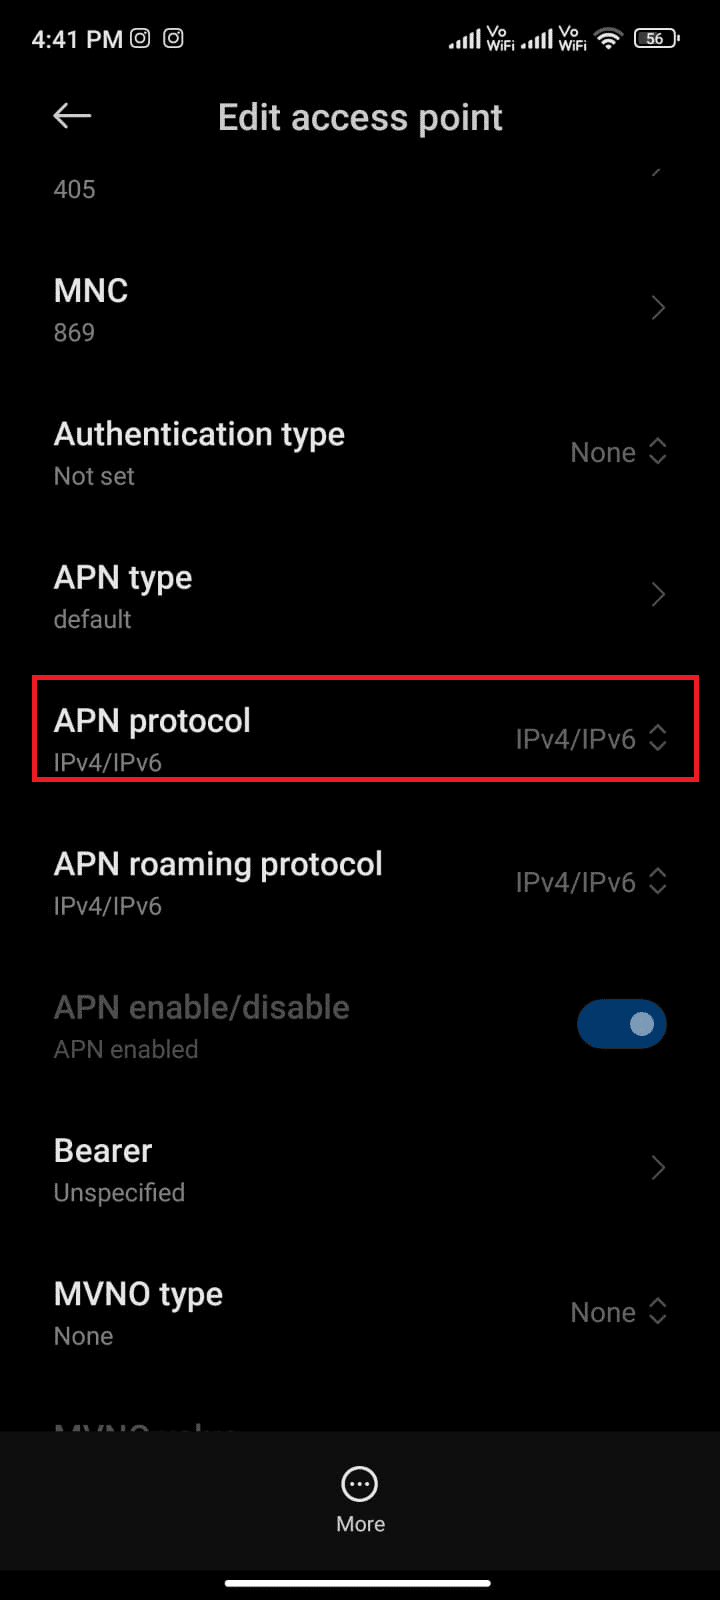 tap on APN roaming protocol